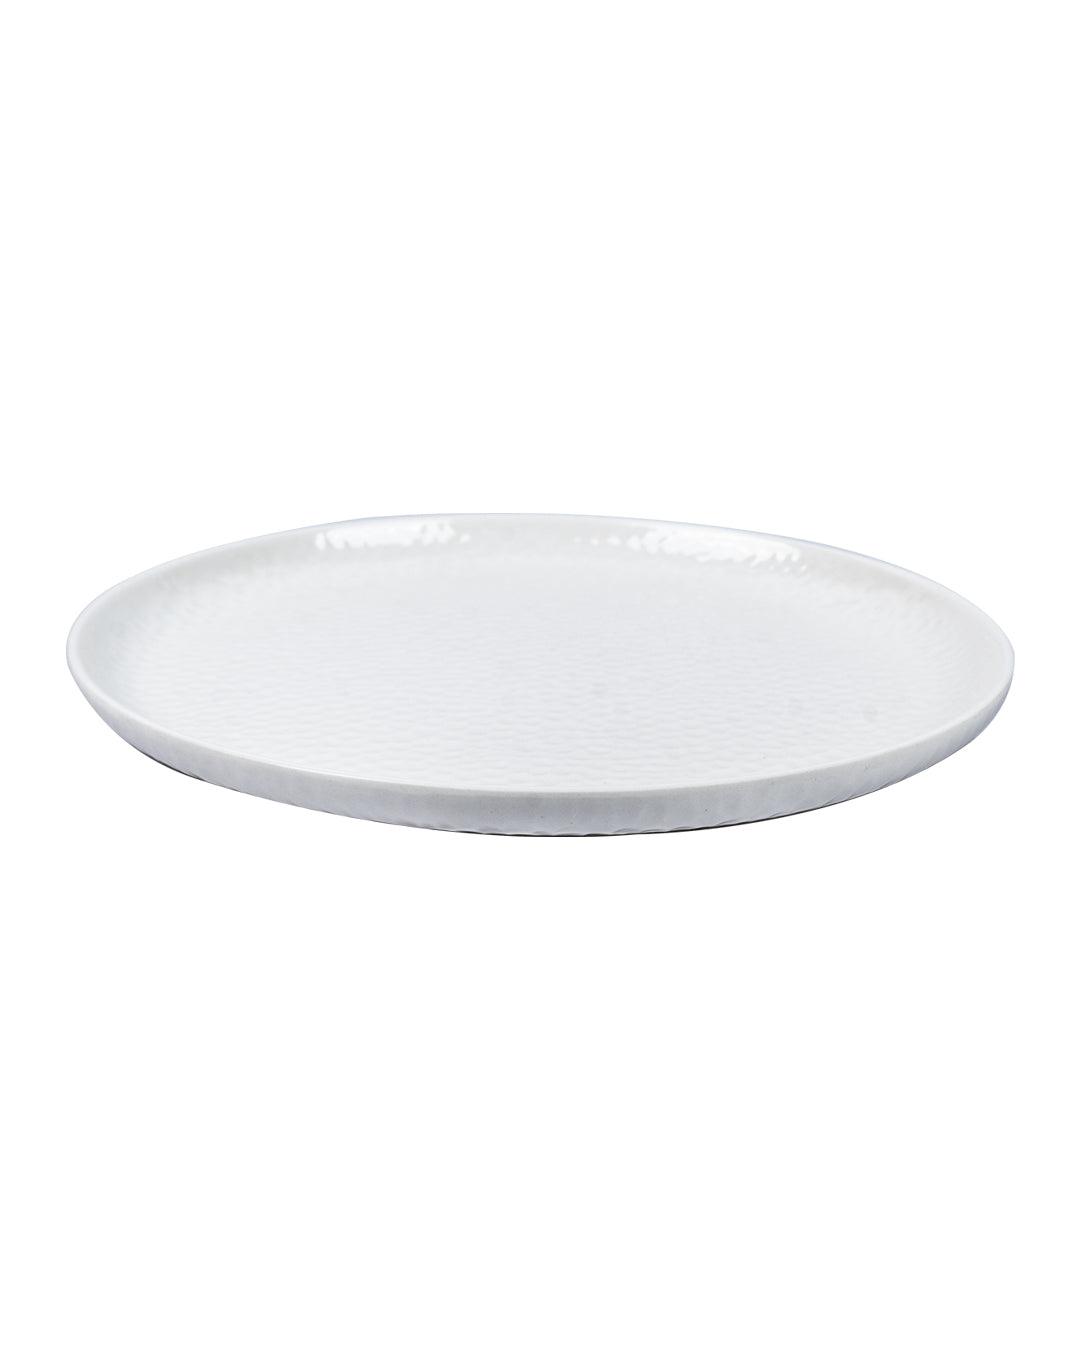 Market 99 Hammered Melamine Tableware White Glossy Finish Quarter Plates for Dining Table (Set Of 6, White) - MARKET 99